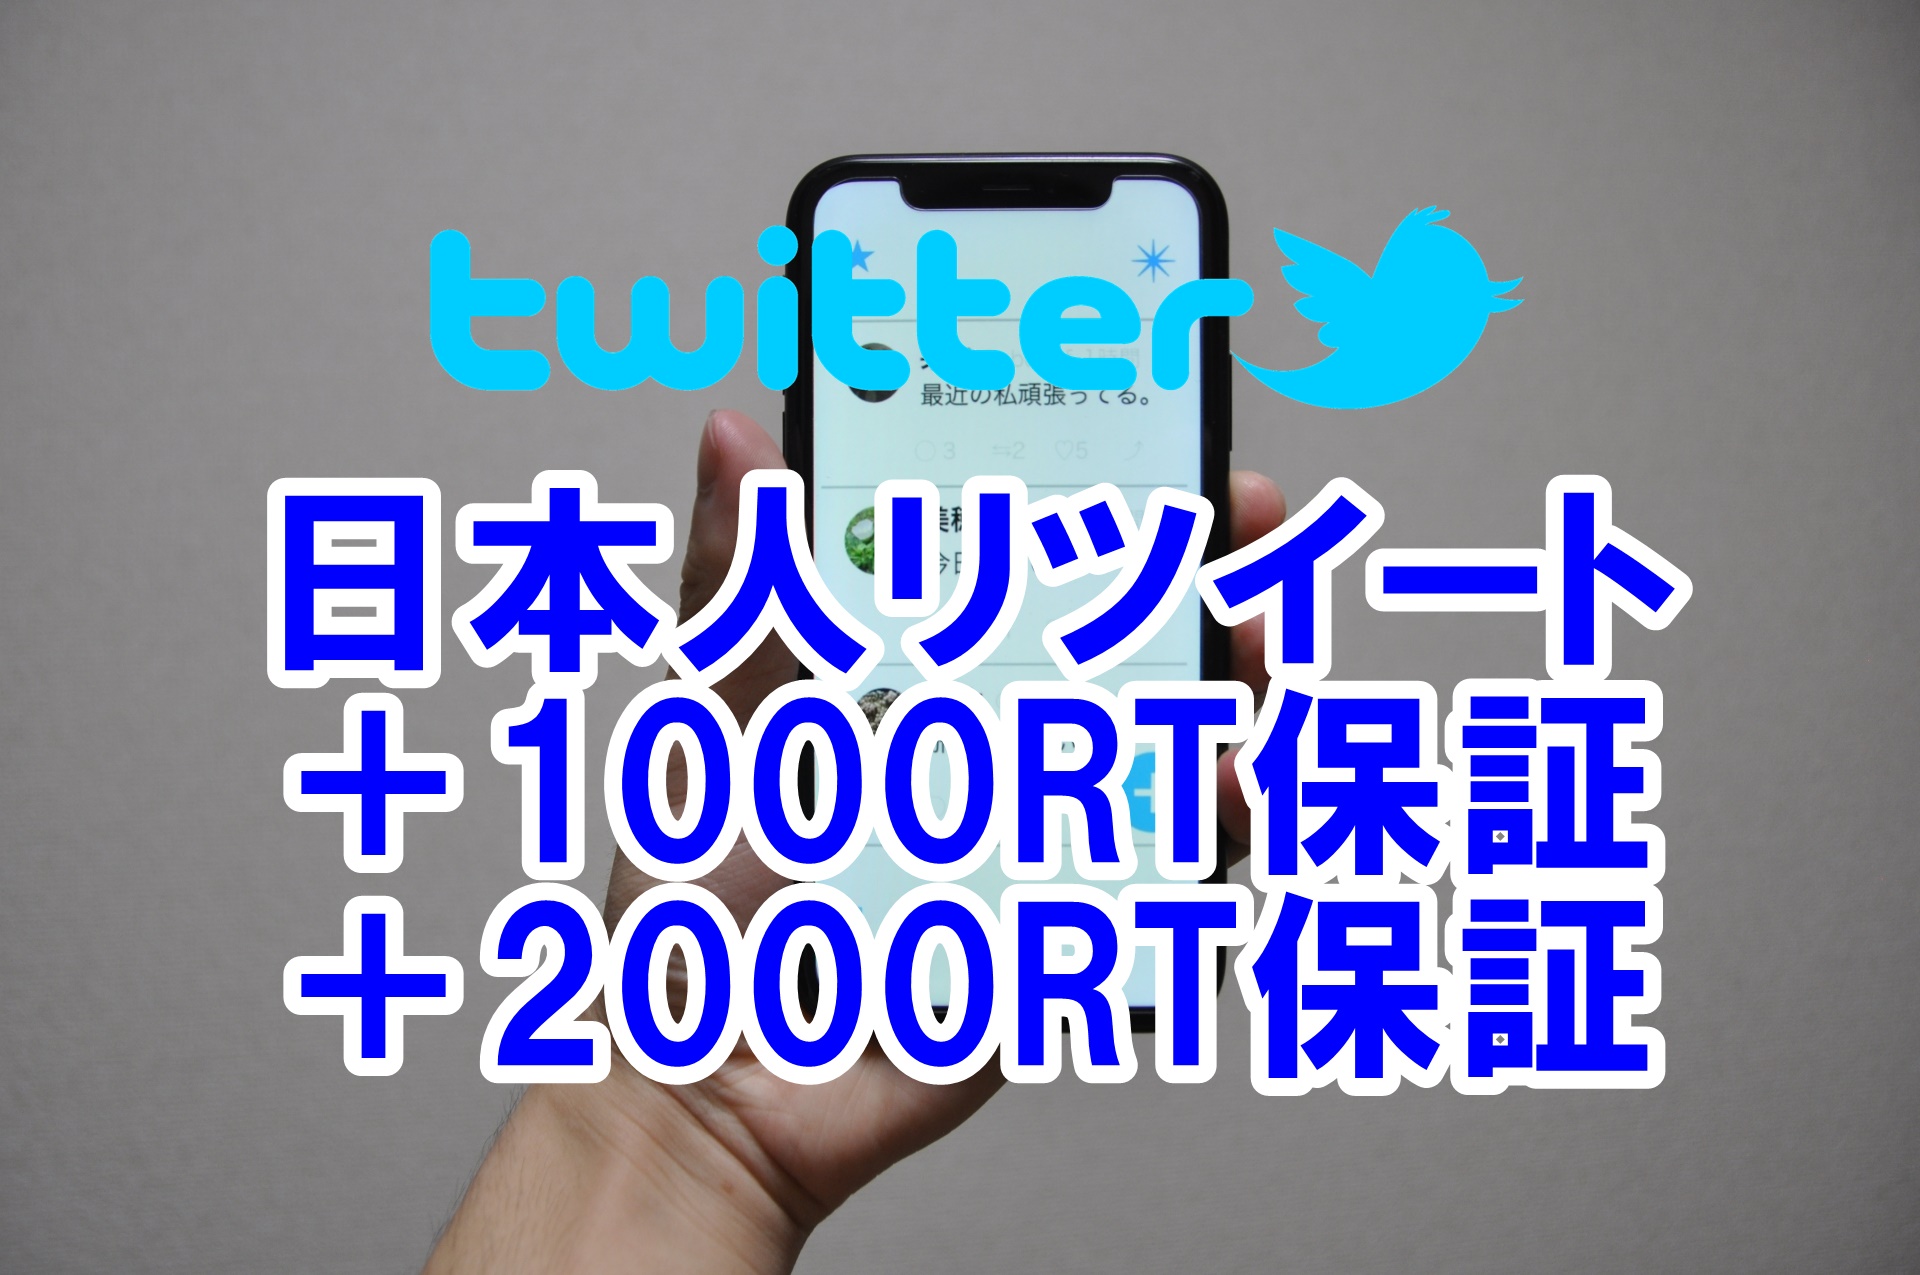 ツイッターリツイート日本人1000